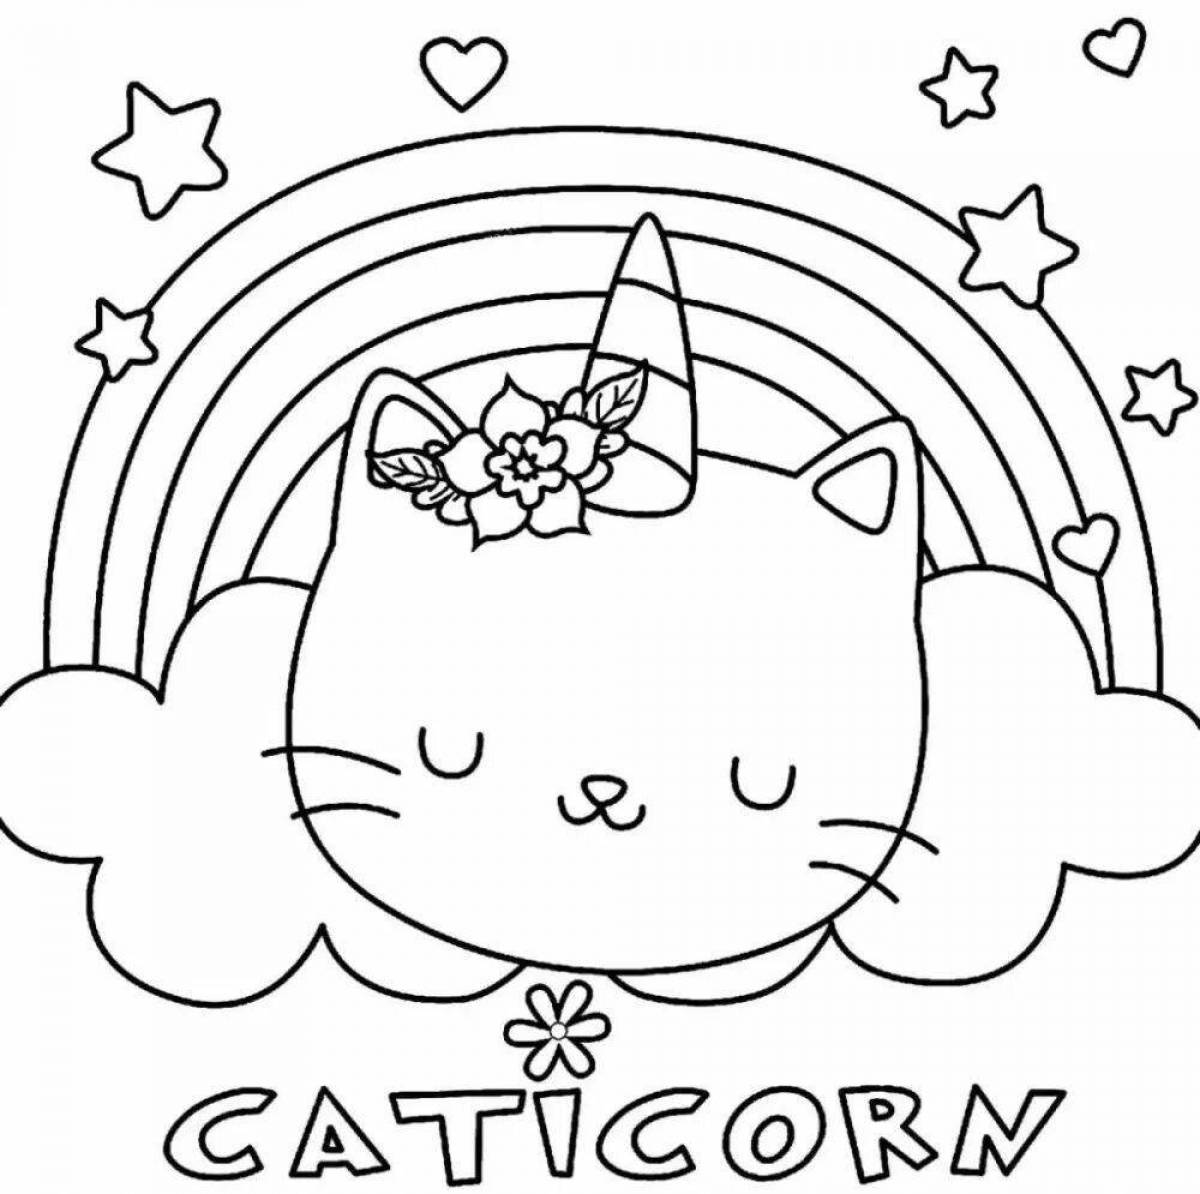 Cute rainbow cat felicity coloring book